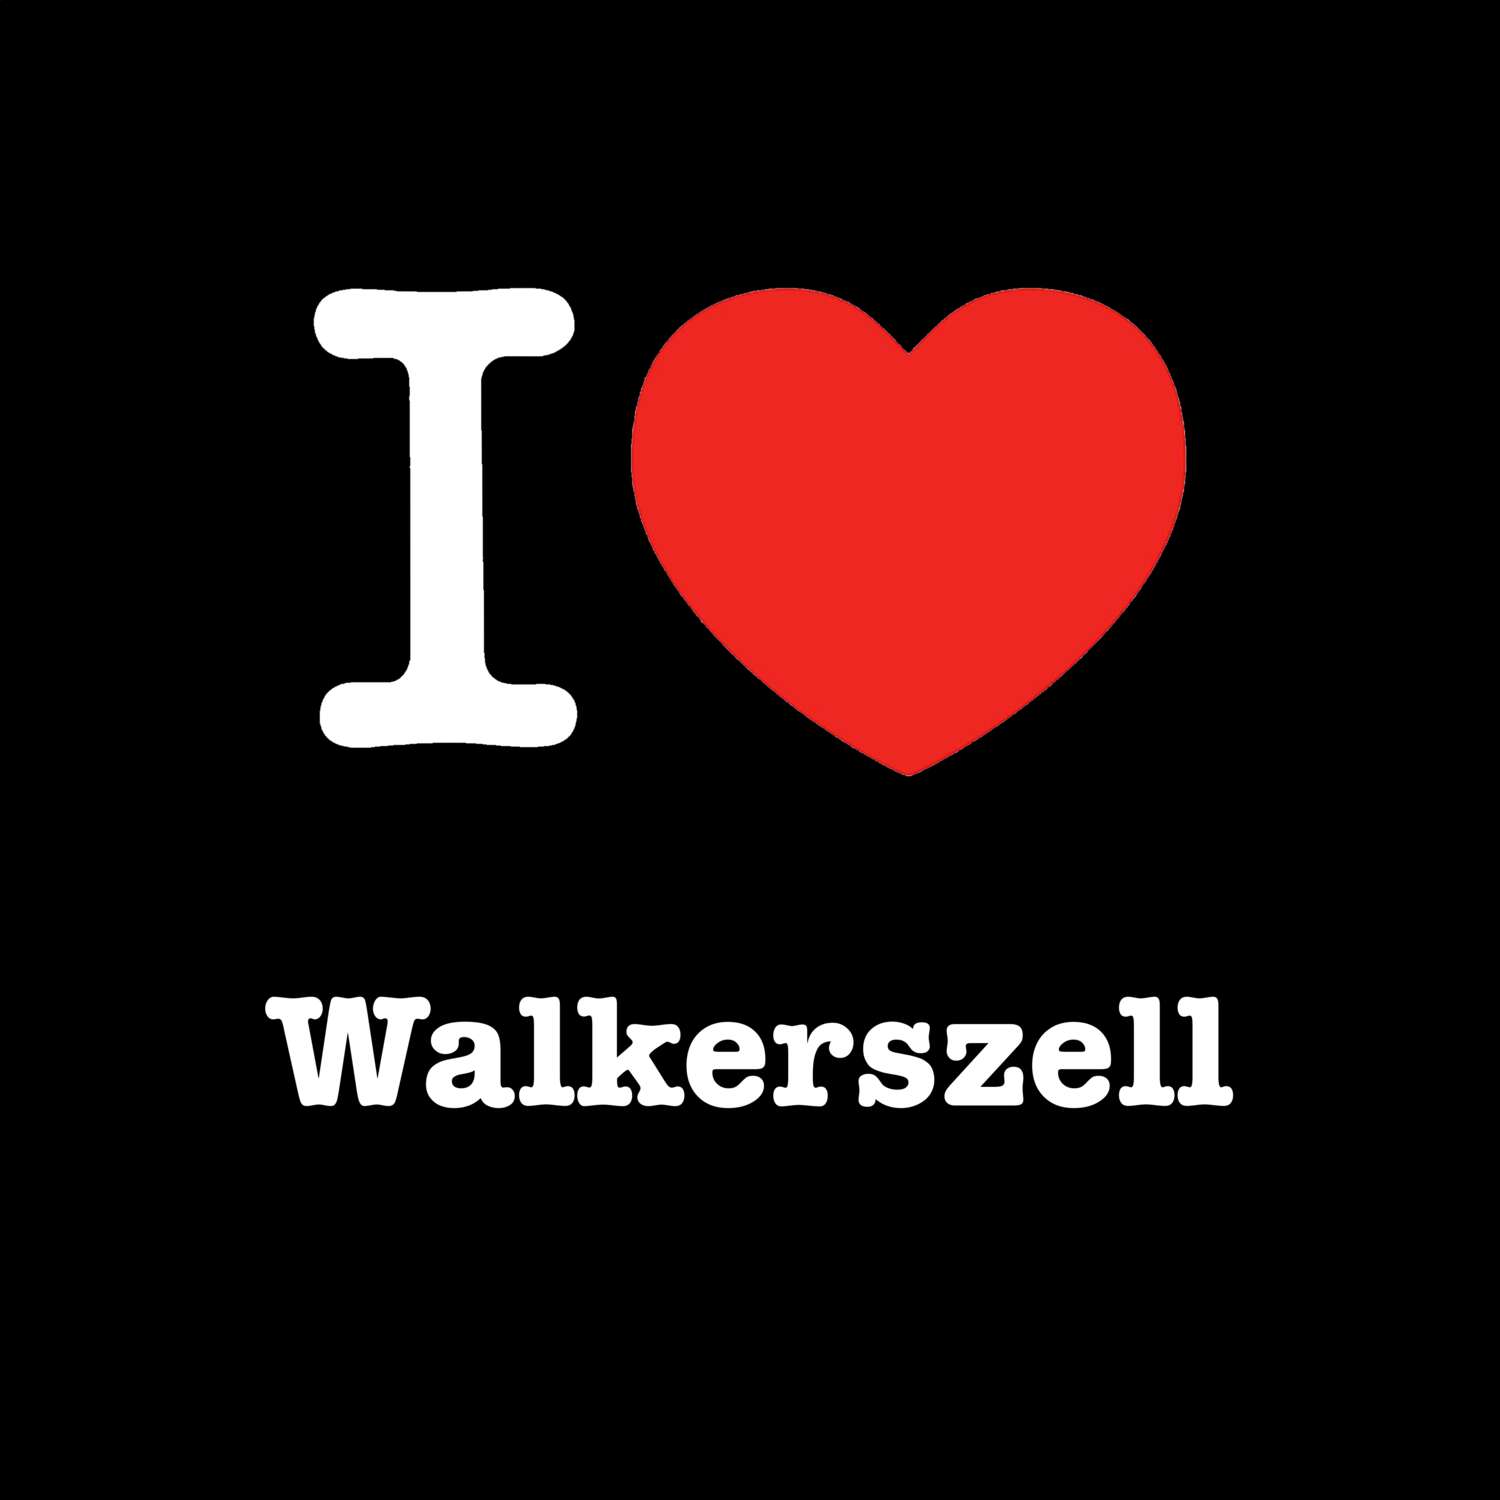 Walkerszell T-Shirt »I love«